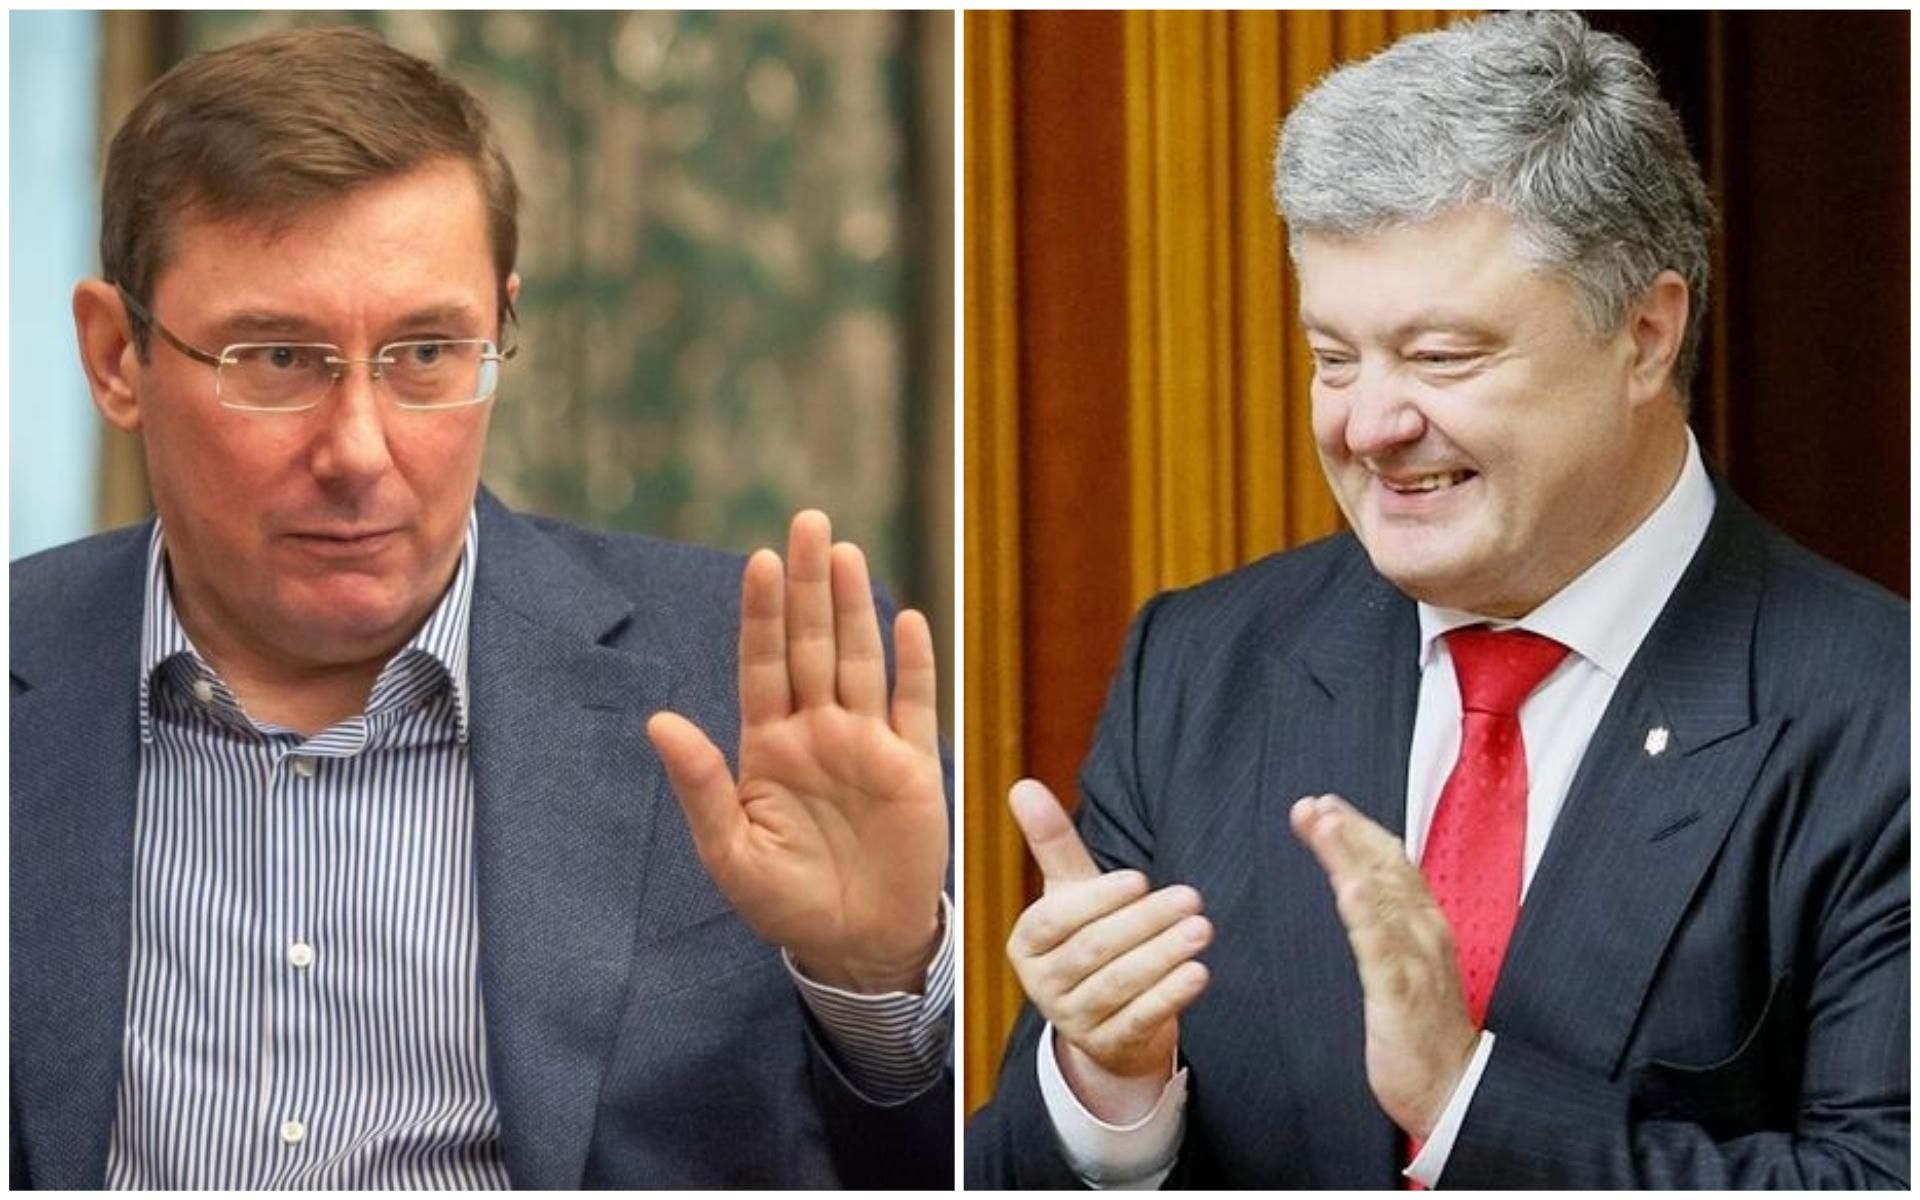 "Агитировать не буду, почему же я здесь?":соцсети высмеяли заявление Луценко на форуме Порошенко